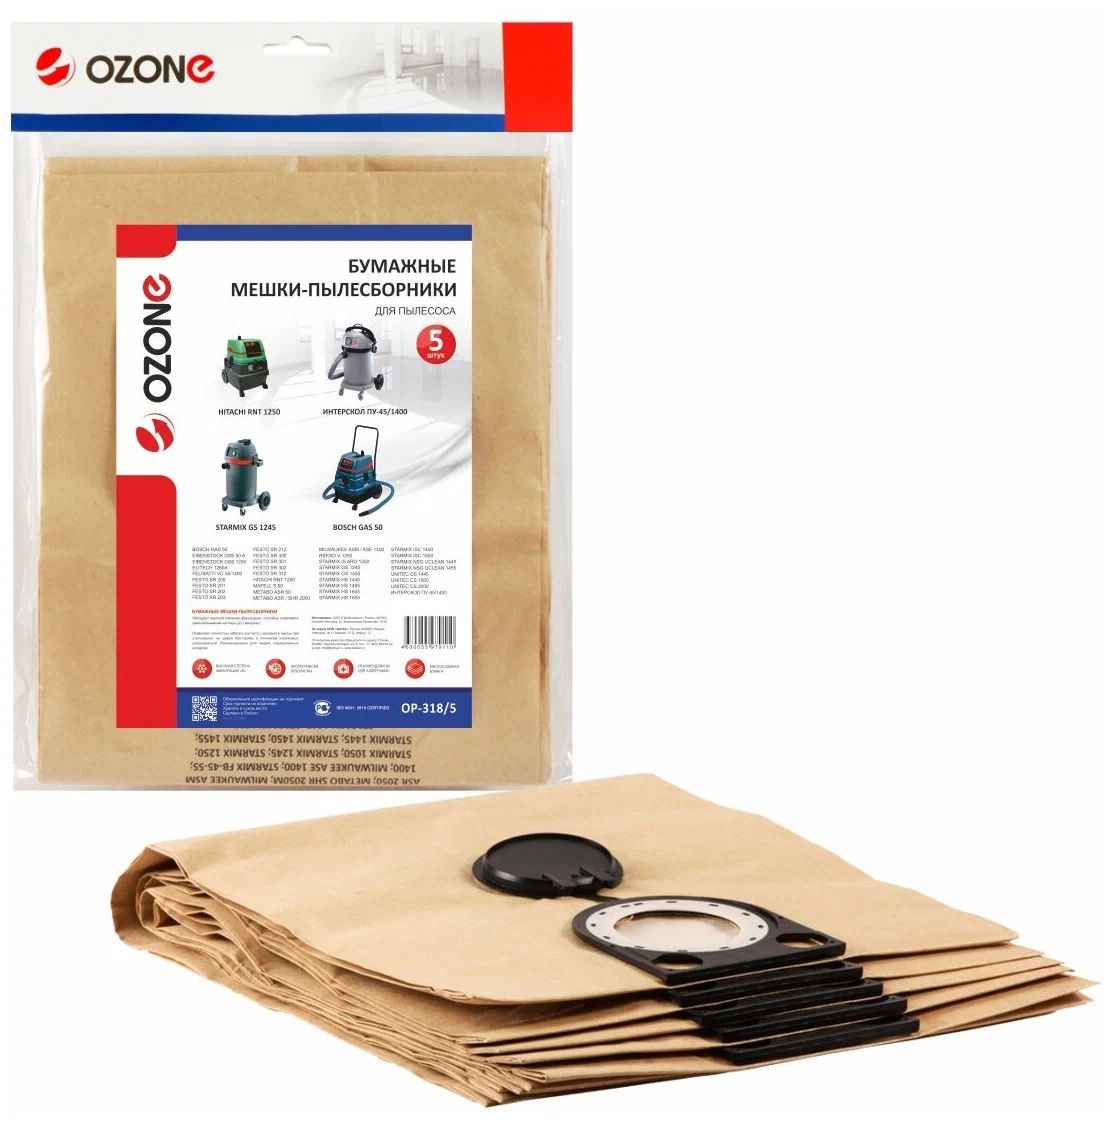 OP-318/5 Мешки-пылесборники Ozone бумажные для пылесоса, 5 шт